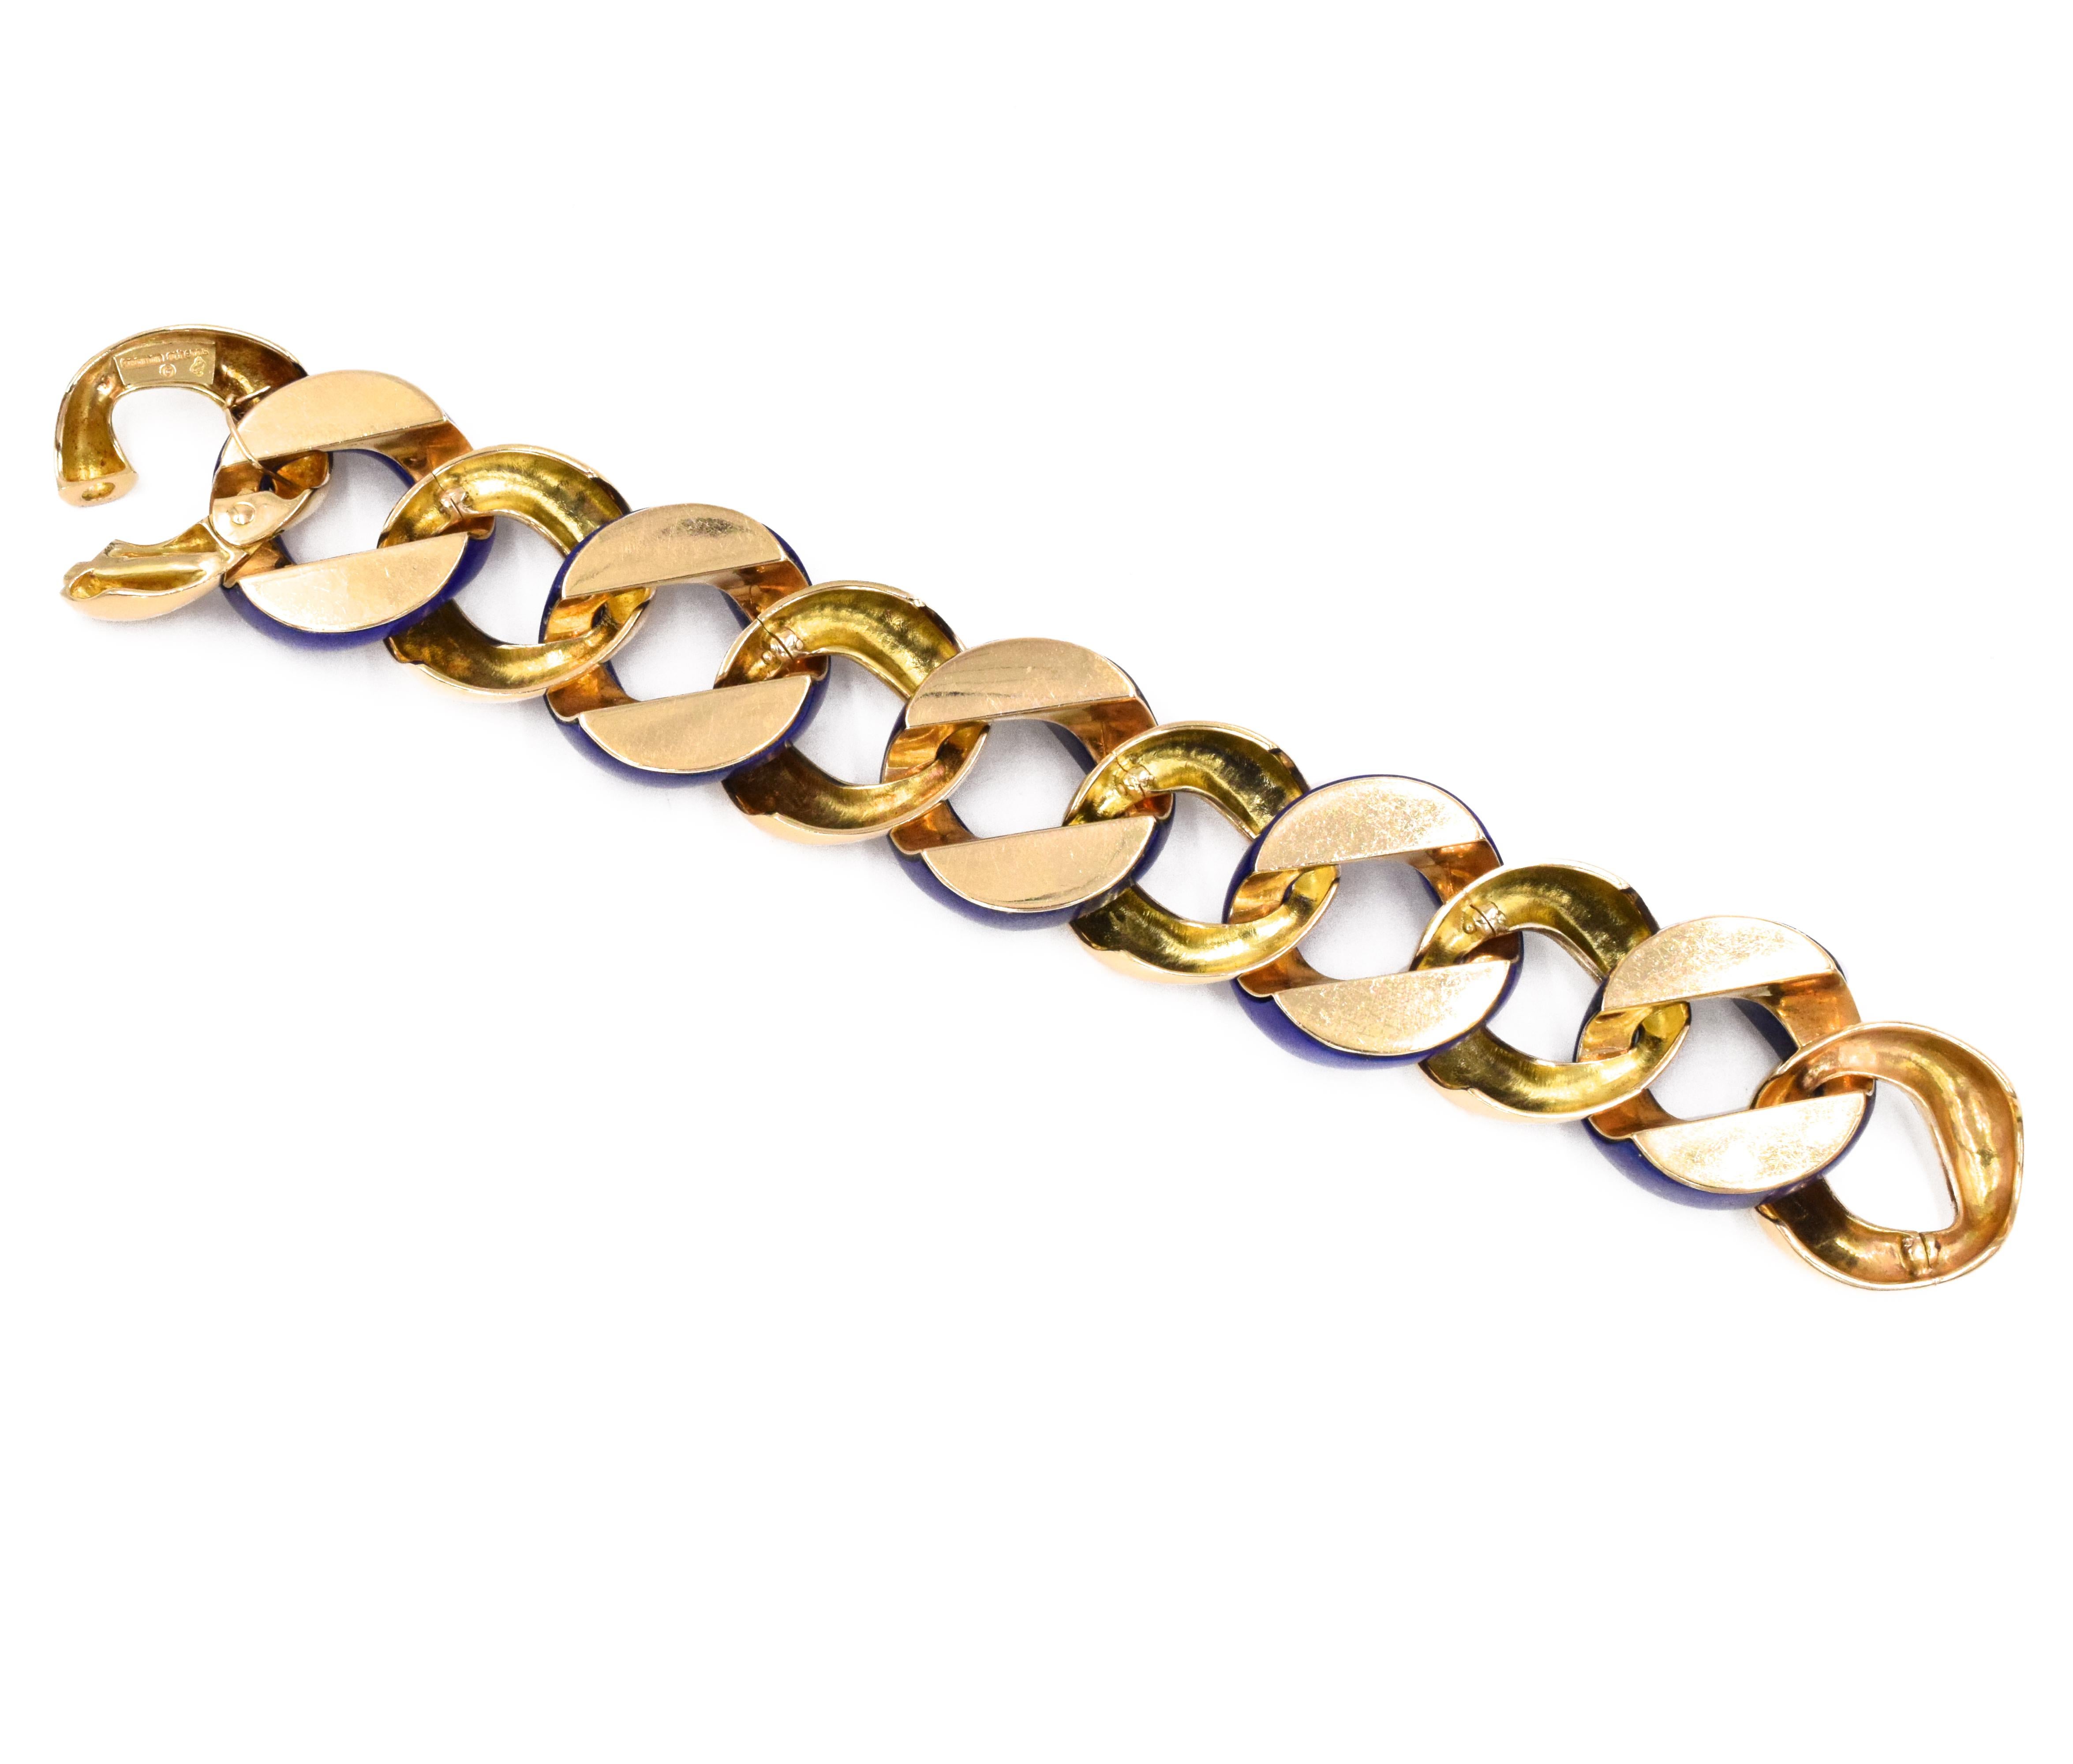 Markenzeichen Stil Seemann Schepps Lapislazuli und Gold-Armband. Dieses Armband besteht aus Gliedern aus 18 Karat Gelbgold und Lapislazuli:: der in 18 Karat Gelbgold gefasst ist. Signiert Seemann Schepps und Herstellerzeichen. Länge: 8.5 Zoll.